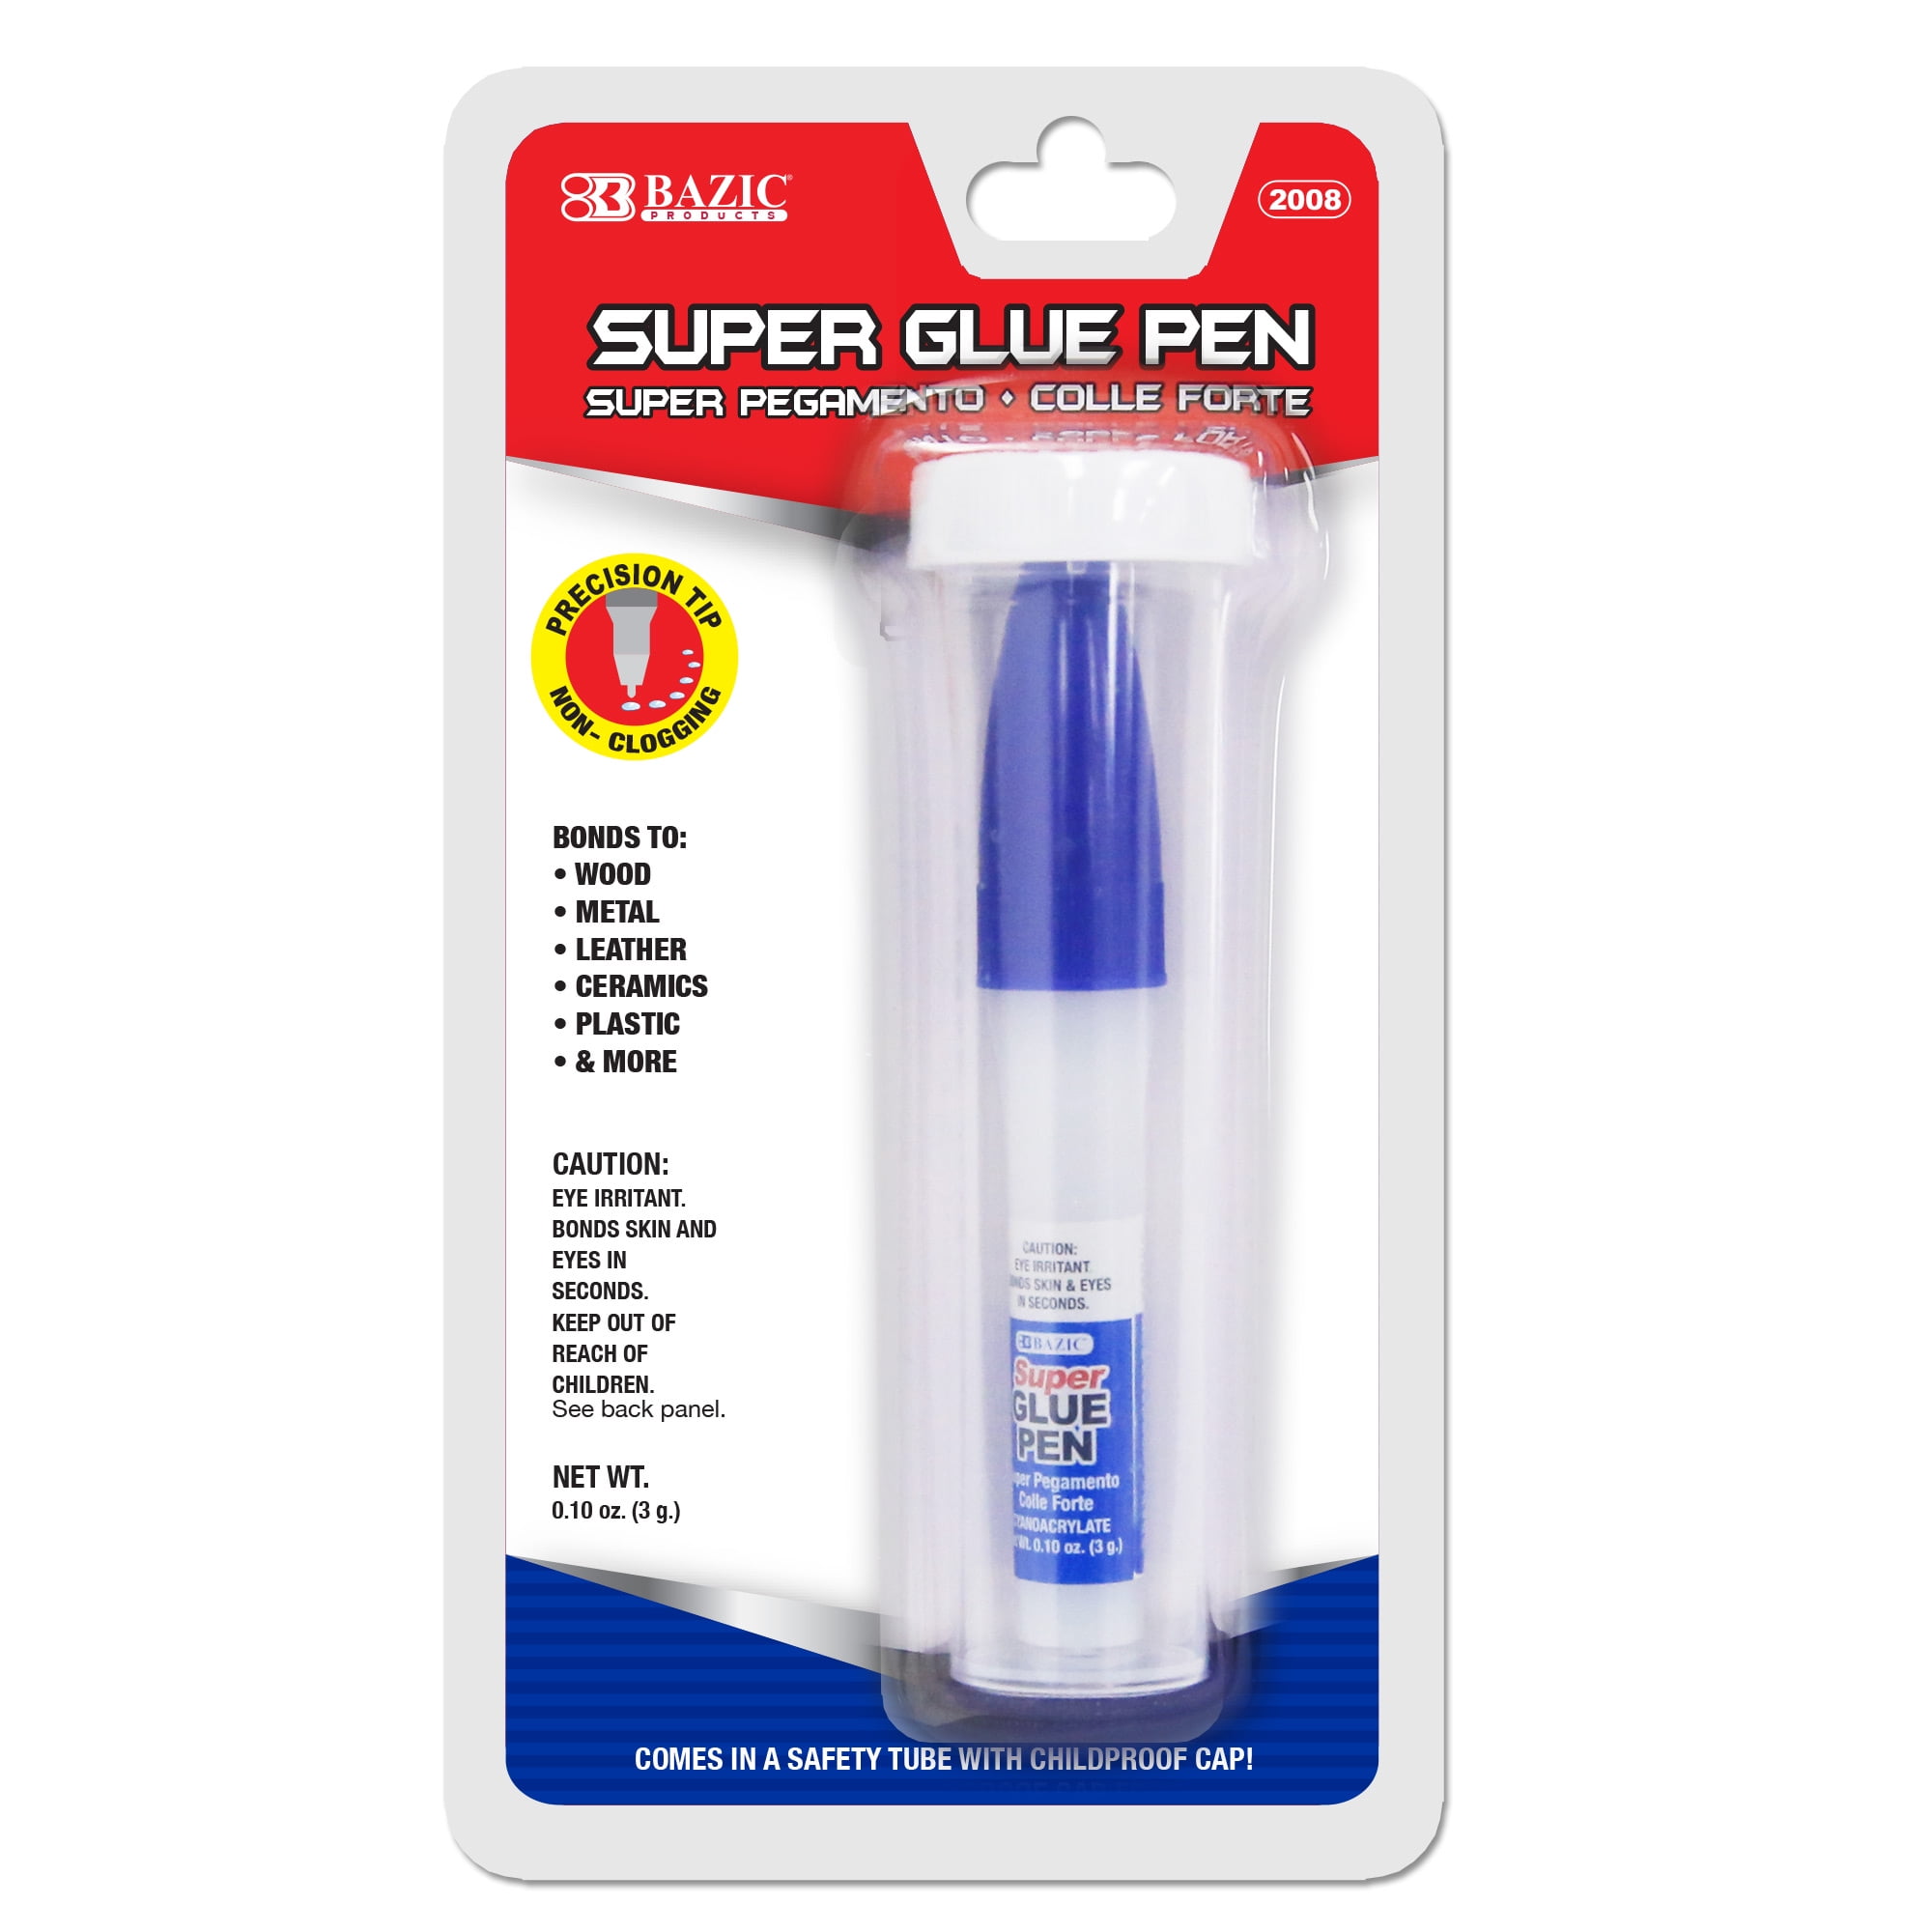 Elmer's Craft Bond Precision Tip Glue Pen, 3-ct Packs, Set of 2